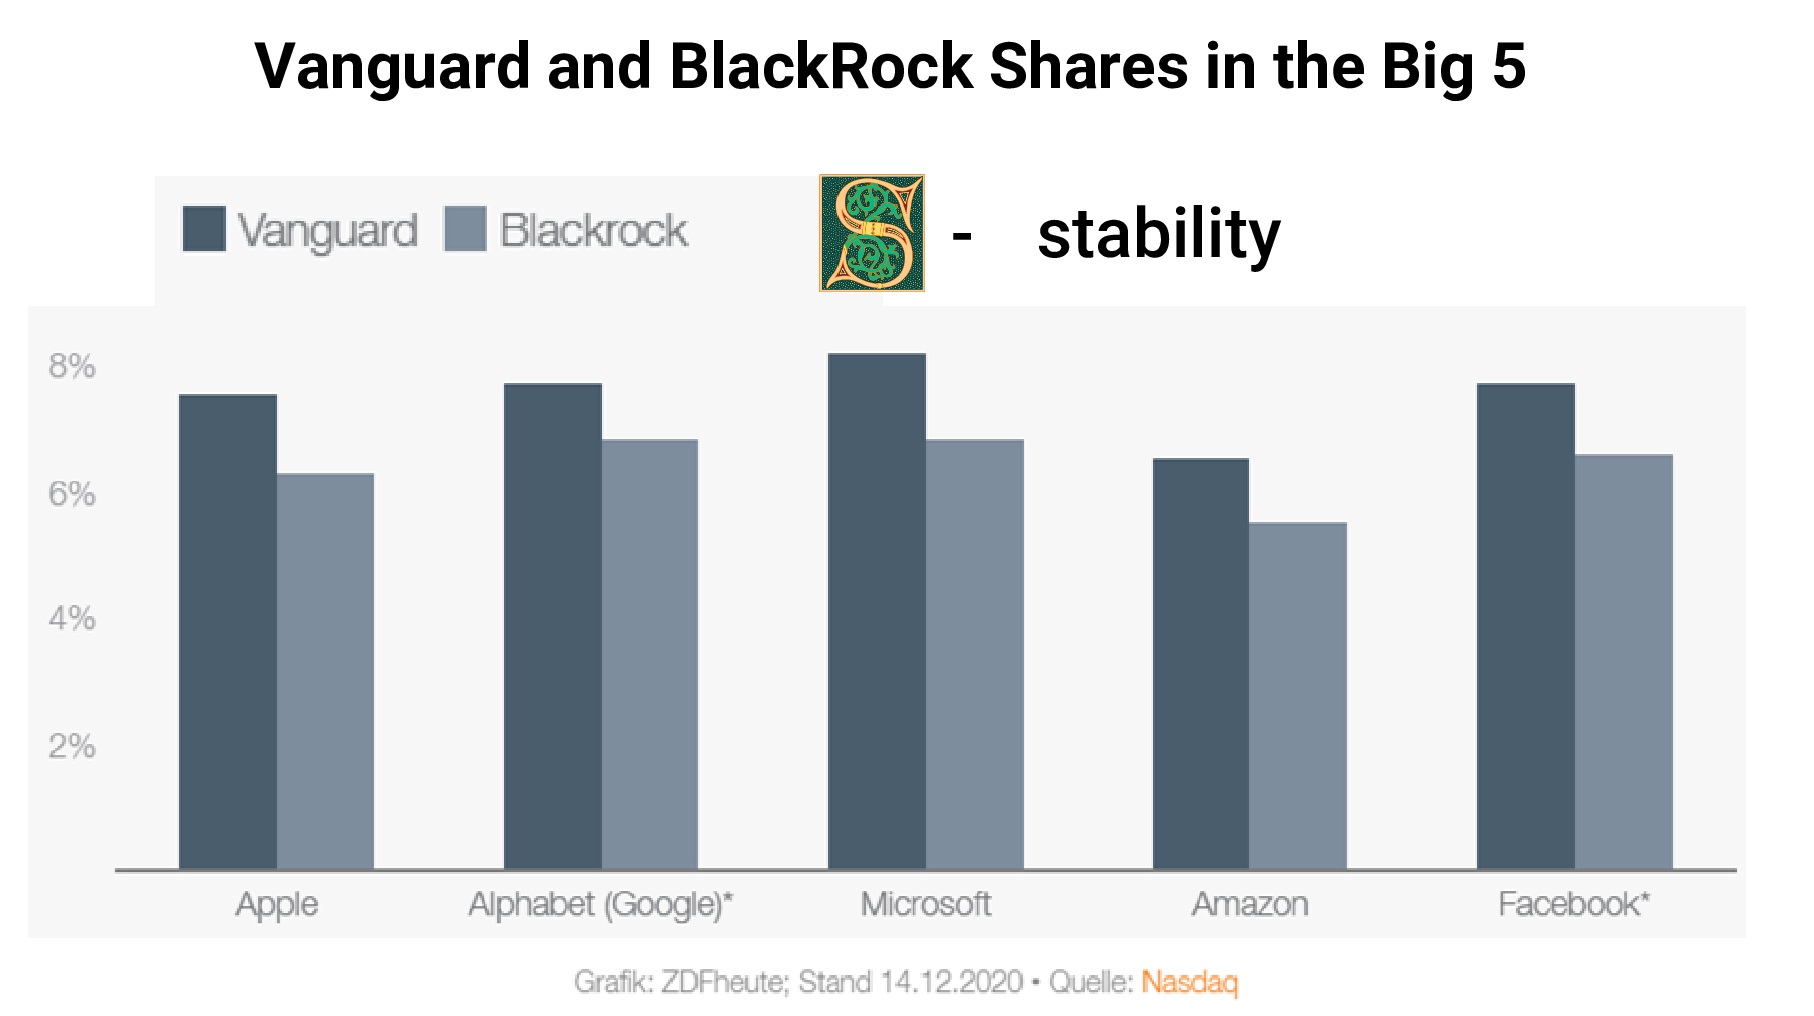 Доля владения акциями BlackRock и Vanguard в компаниях Big 5